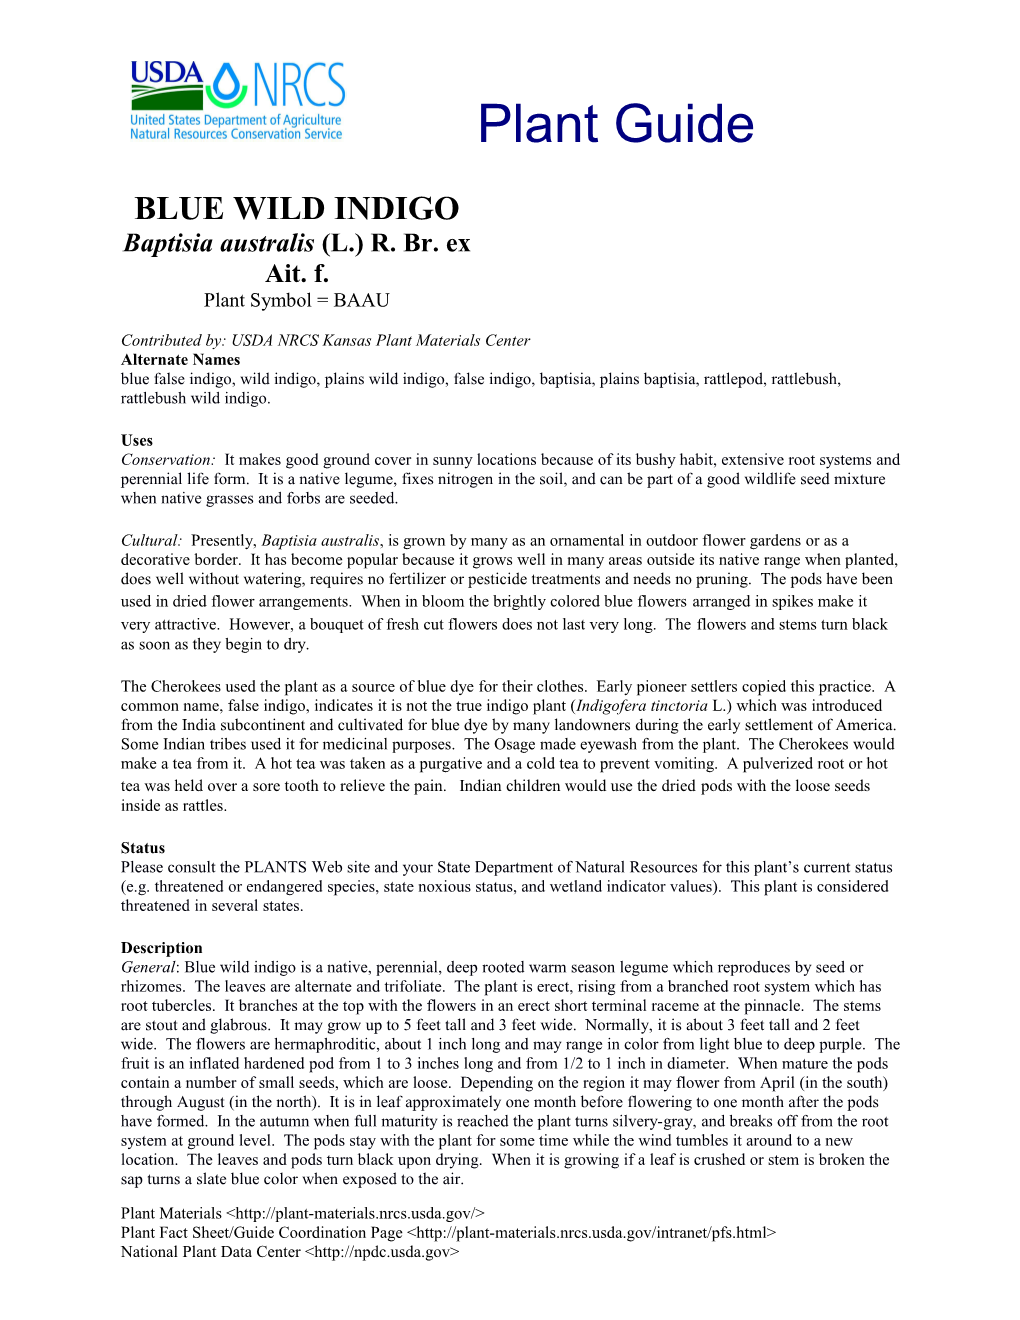 Blue Wild Indigo